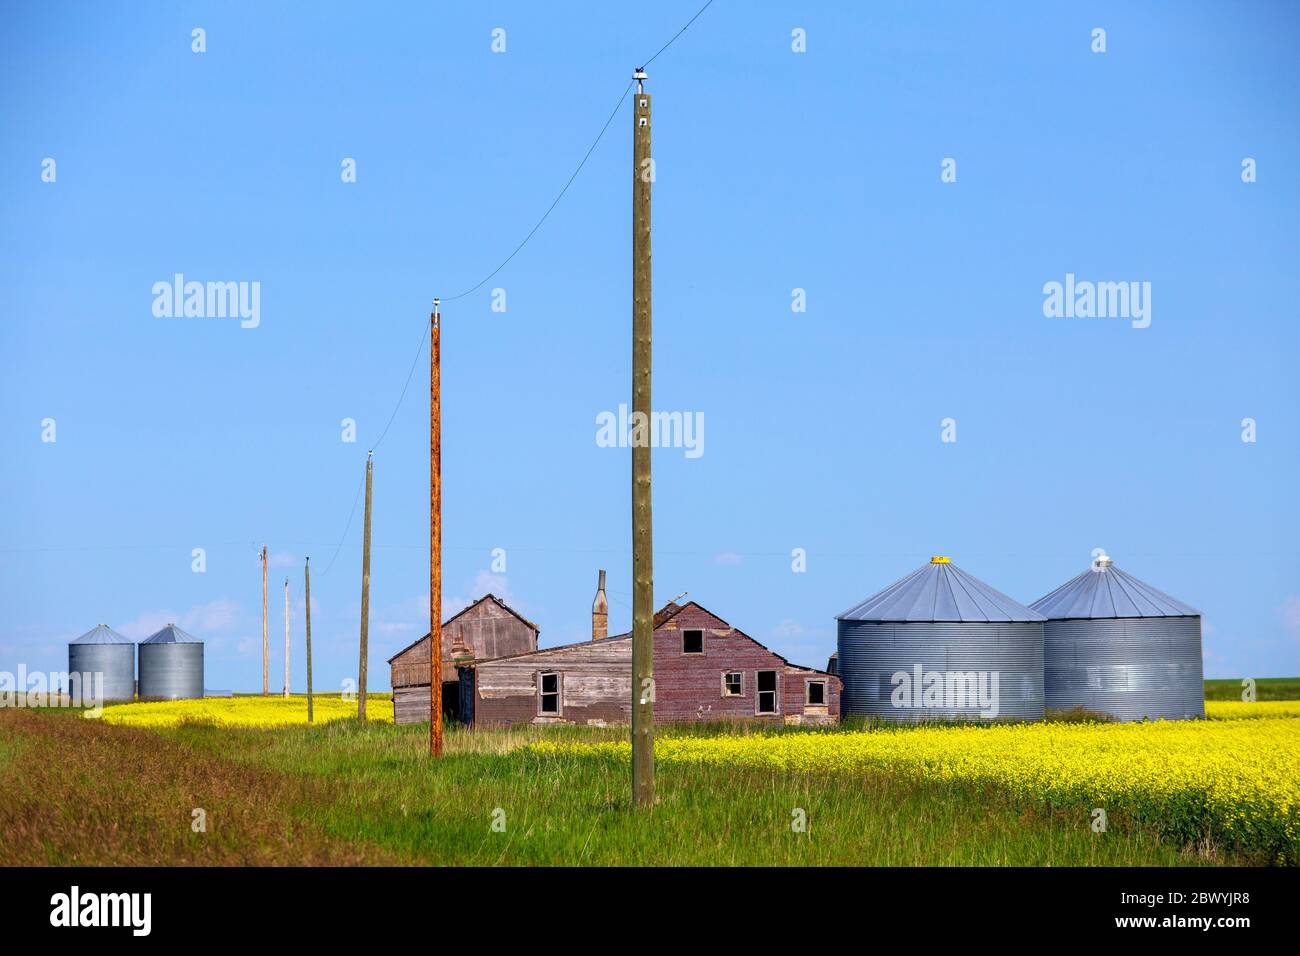 Typische Landschaft der gelben Rapsfeld in Blüte mit landwirtschaftlichen Geräten Lagercontainer in den kanadischen Prärien Provinzen Alberta und SAS Stockfoto